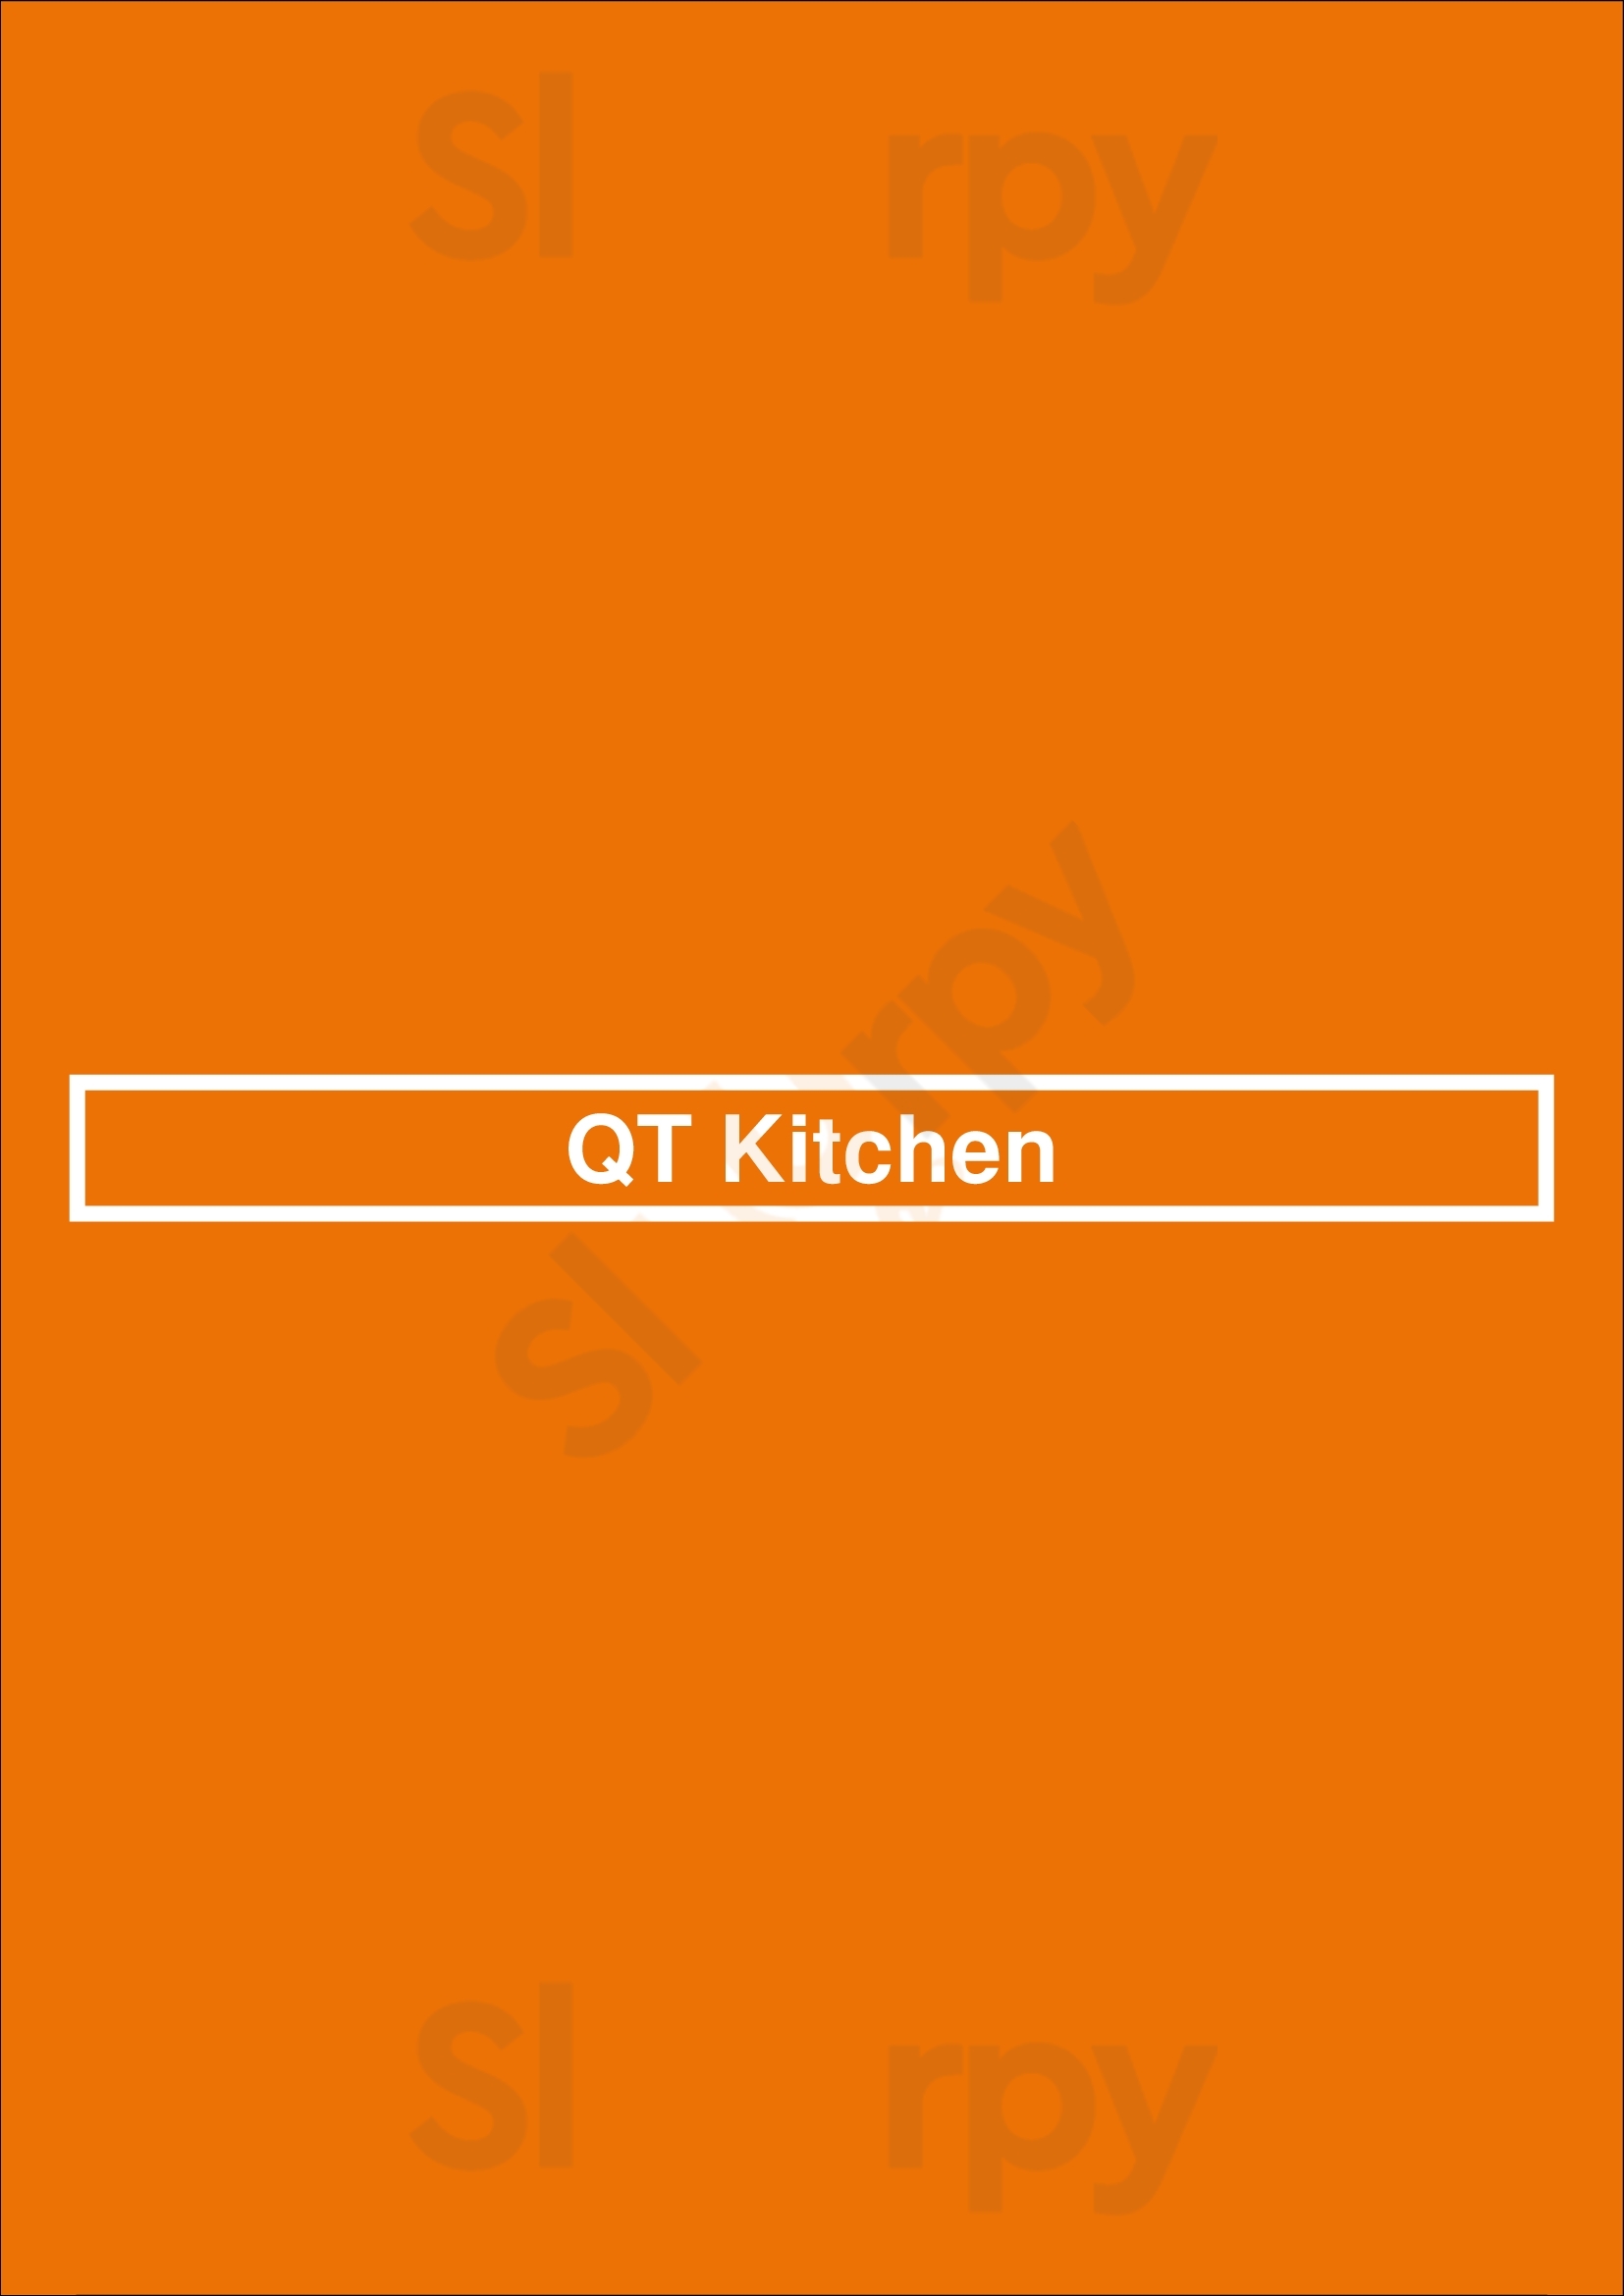 Qt Kitchen Glen Iris Menu - 1